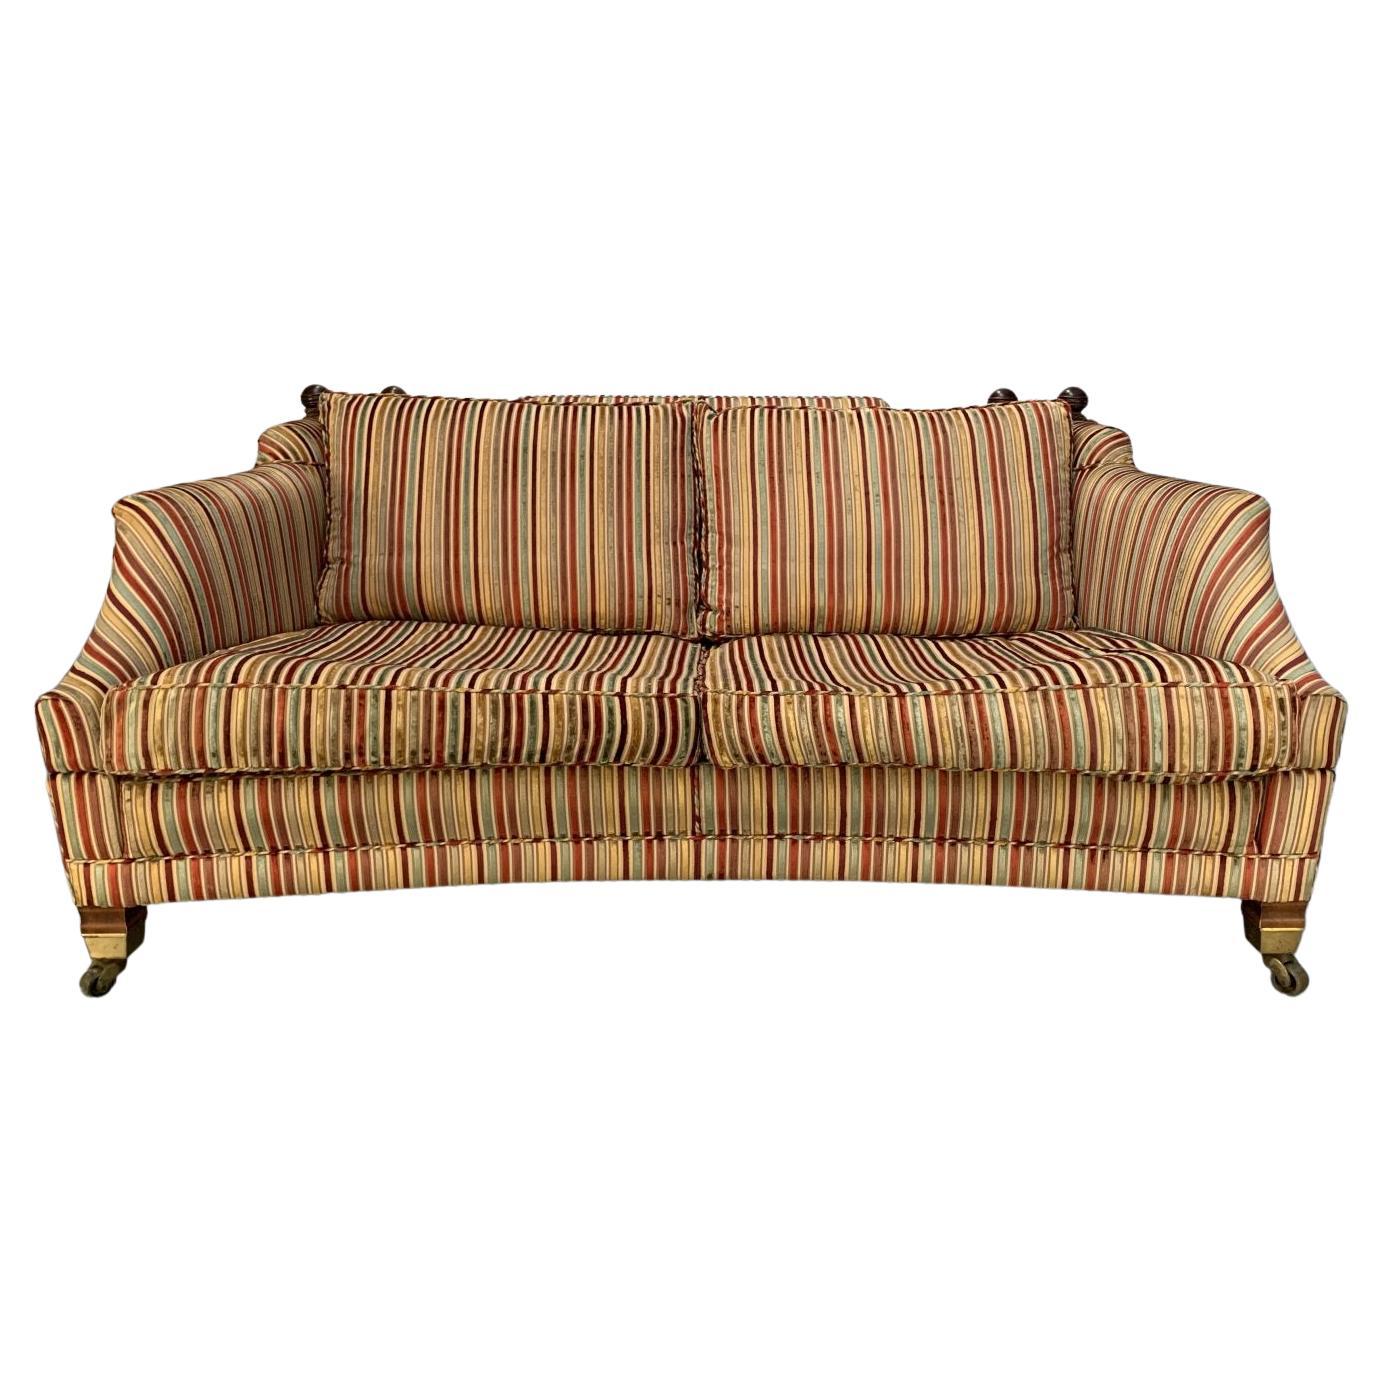 Duresta “Hornblower” Large 2.5-Seat Sofa in Striped Velvet Fabric For Sale